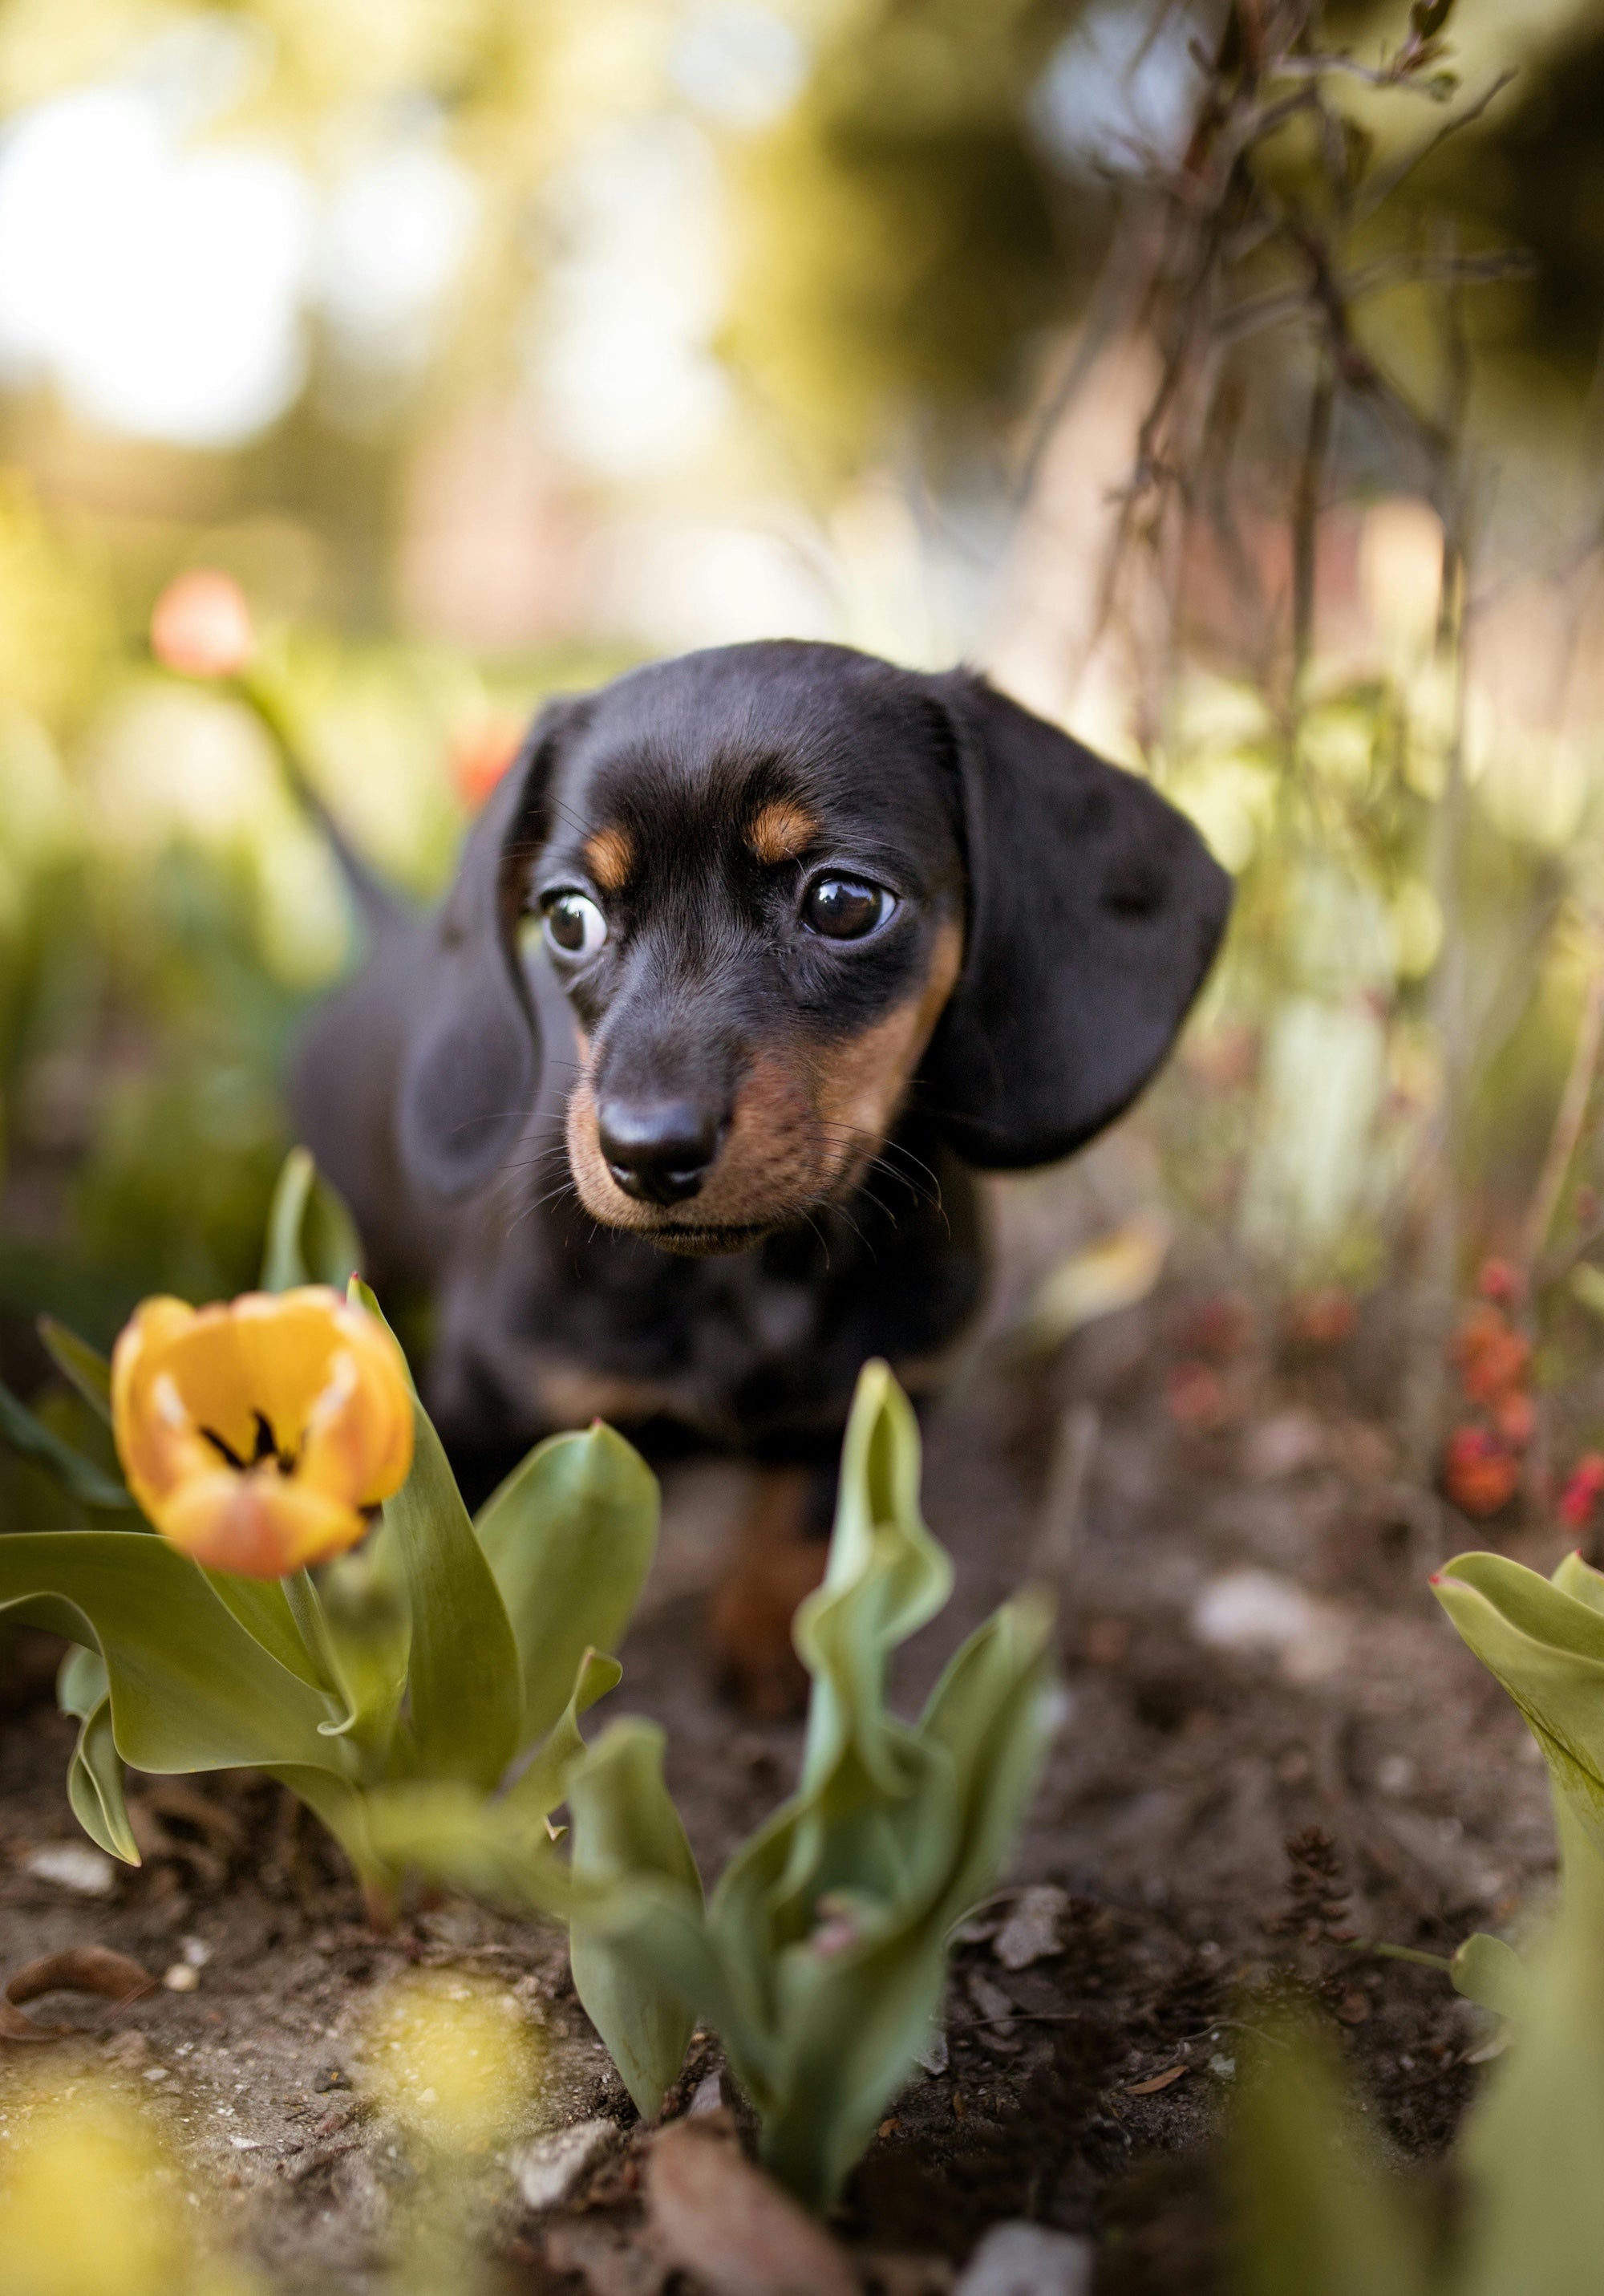 Dachshund puppy walking through a garden